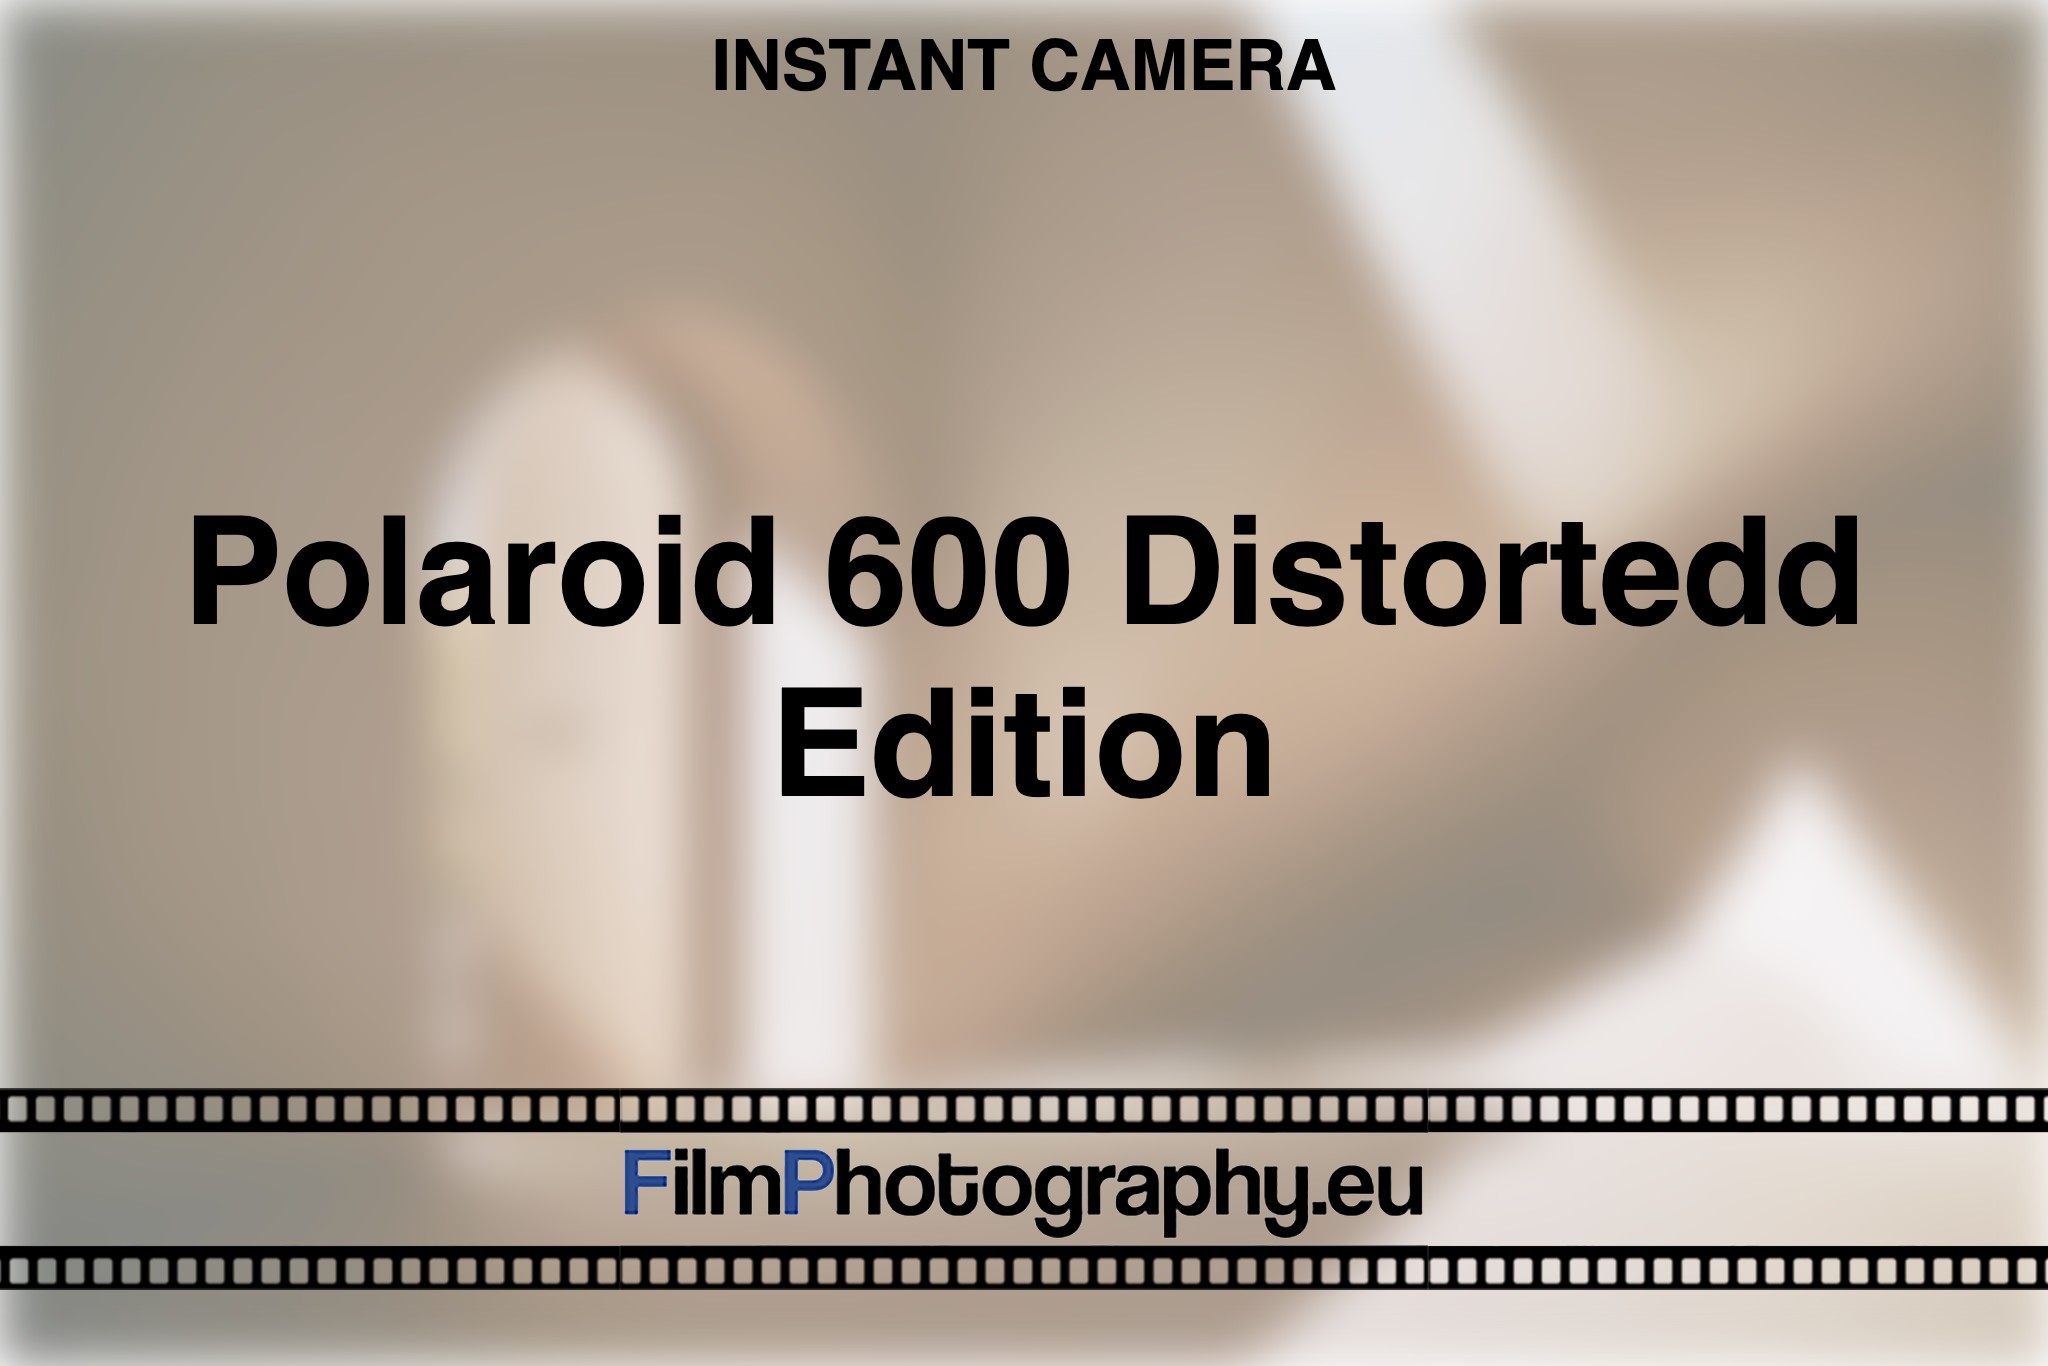 polaroid-600-distortedd-edition-instant-camera-bnv